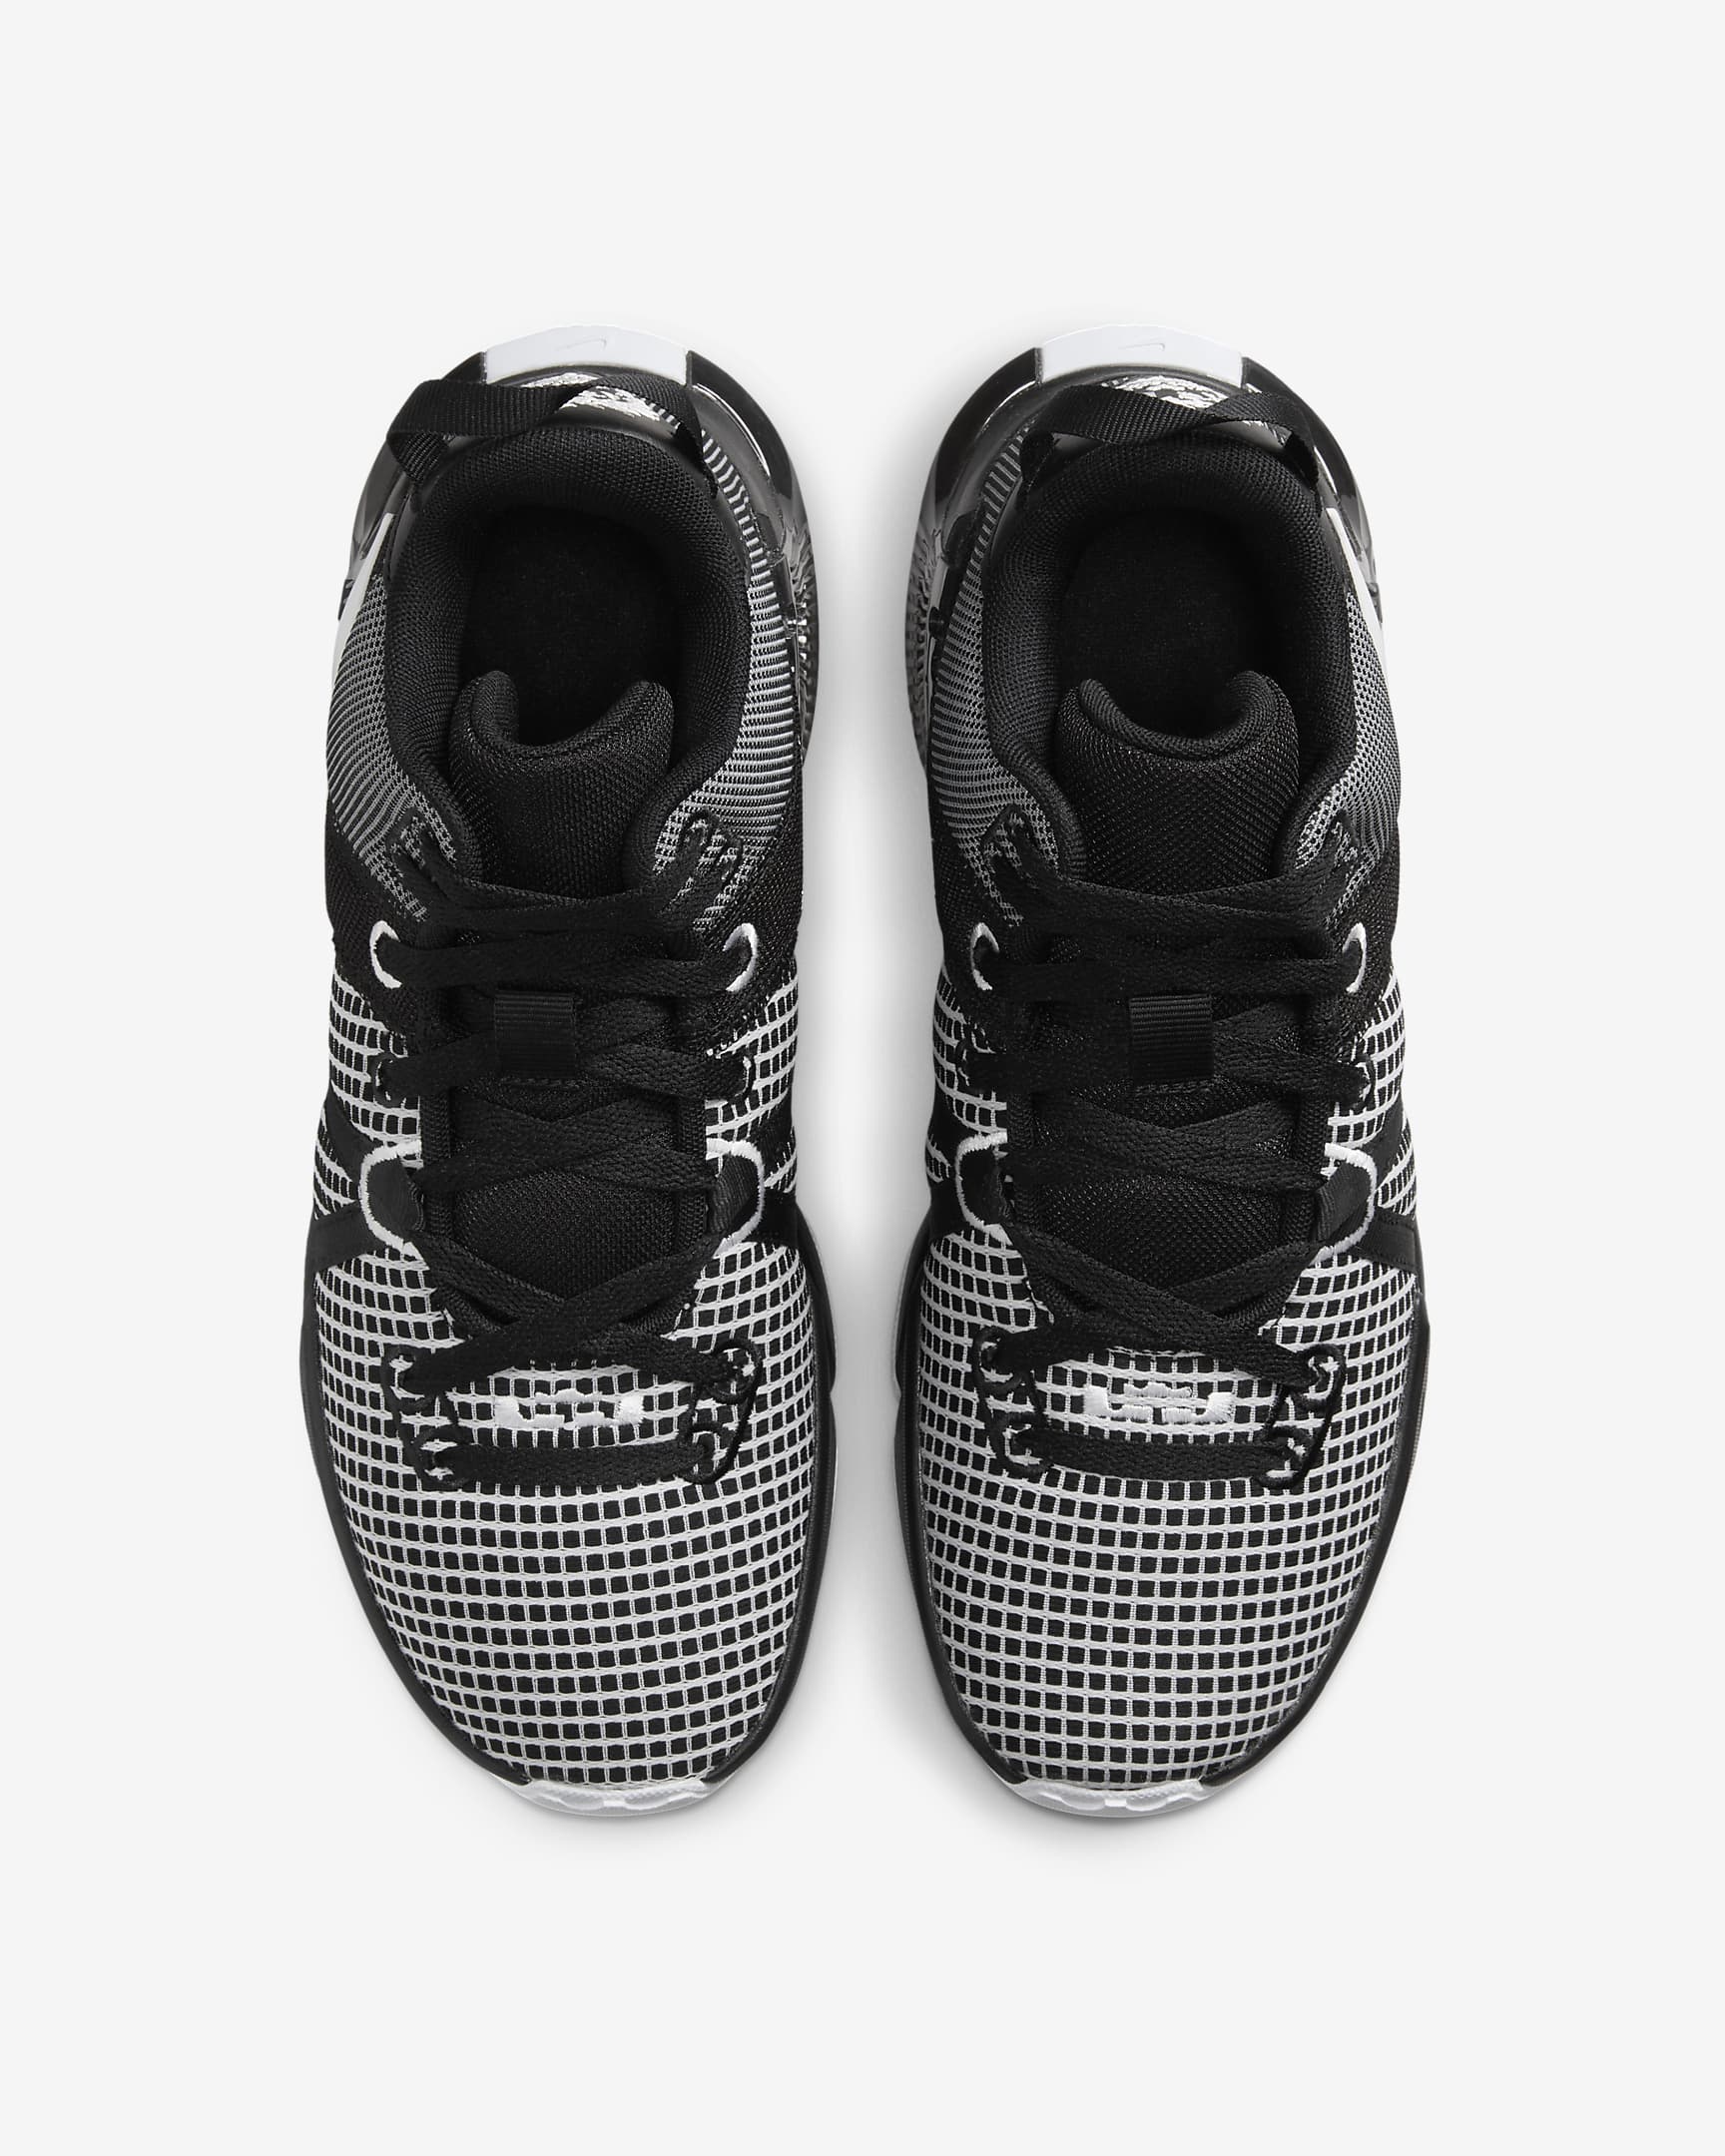 LeBron Witness 7 (Team) Basketball Shoes. Nike.com